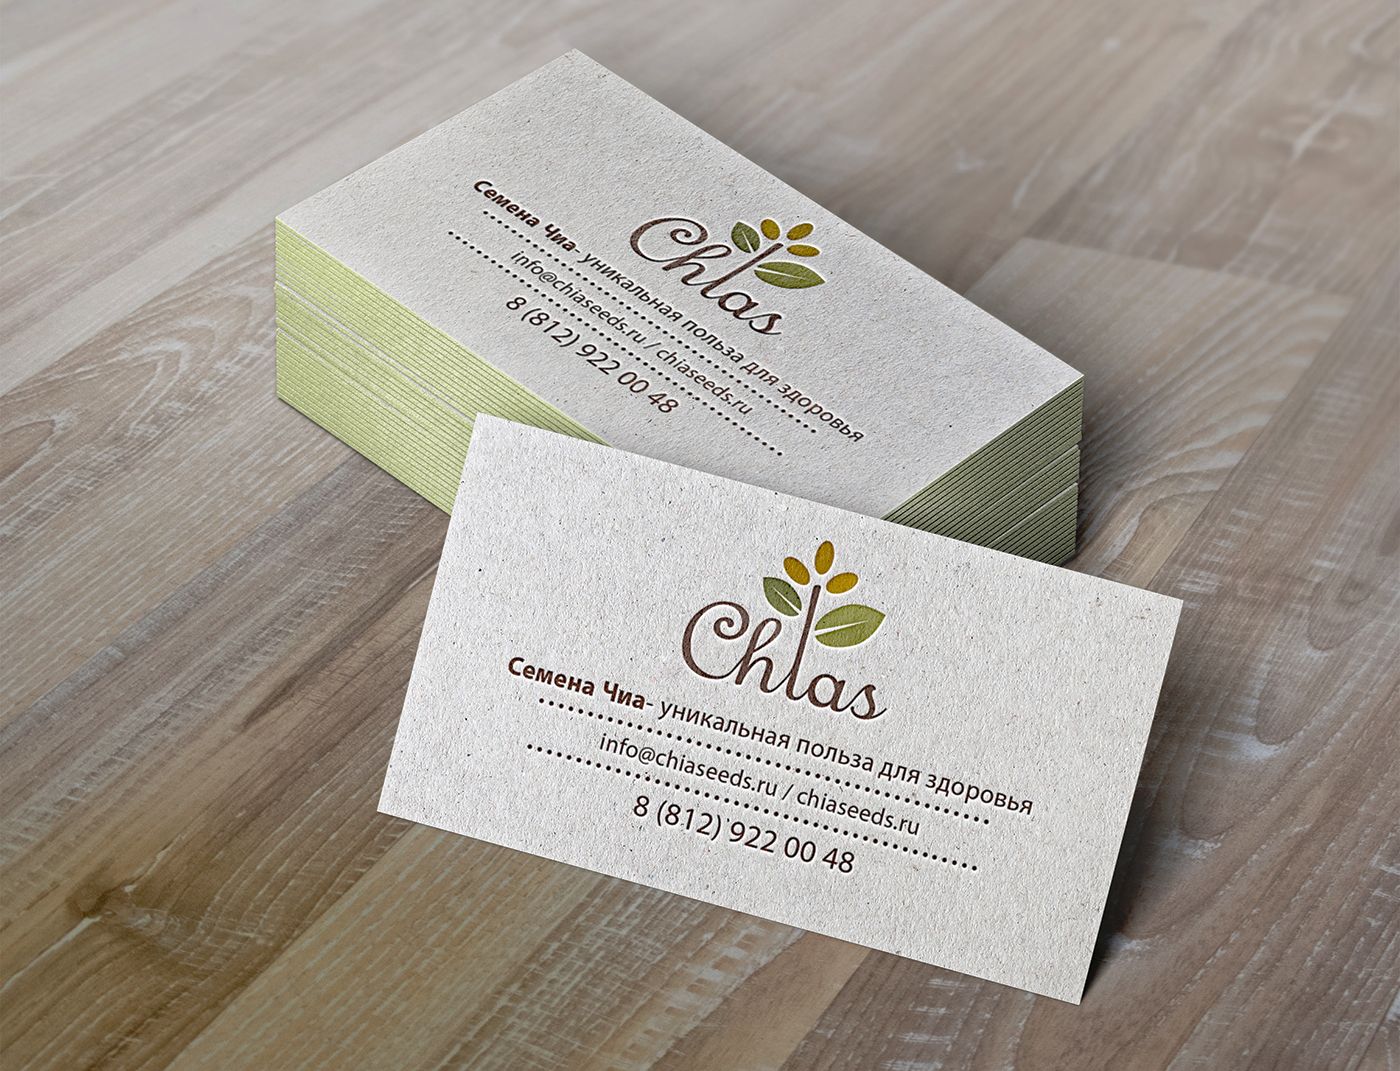 Логотип для компании Chias. Органические продукты. - дизайнер Tatta_21